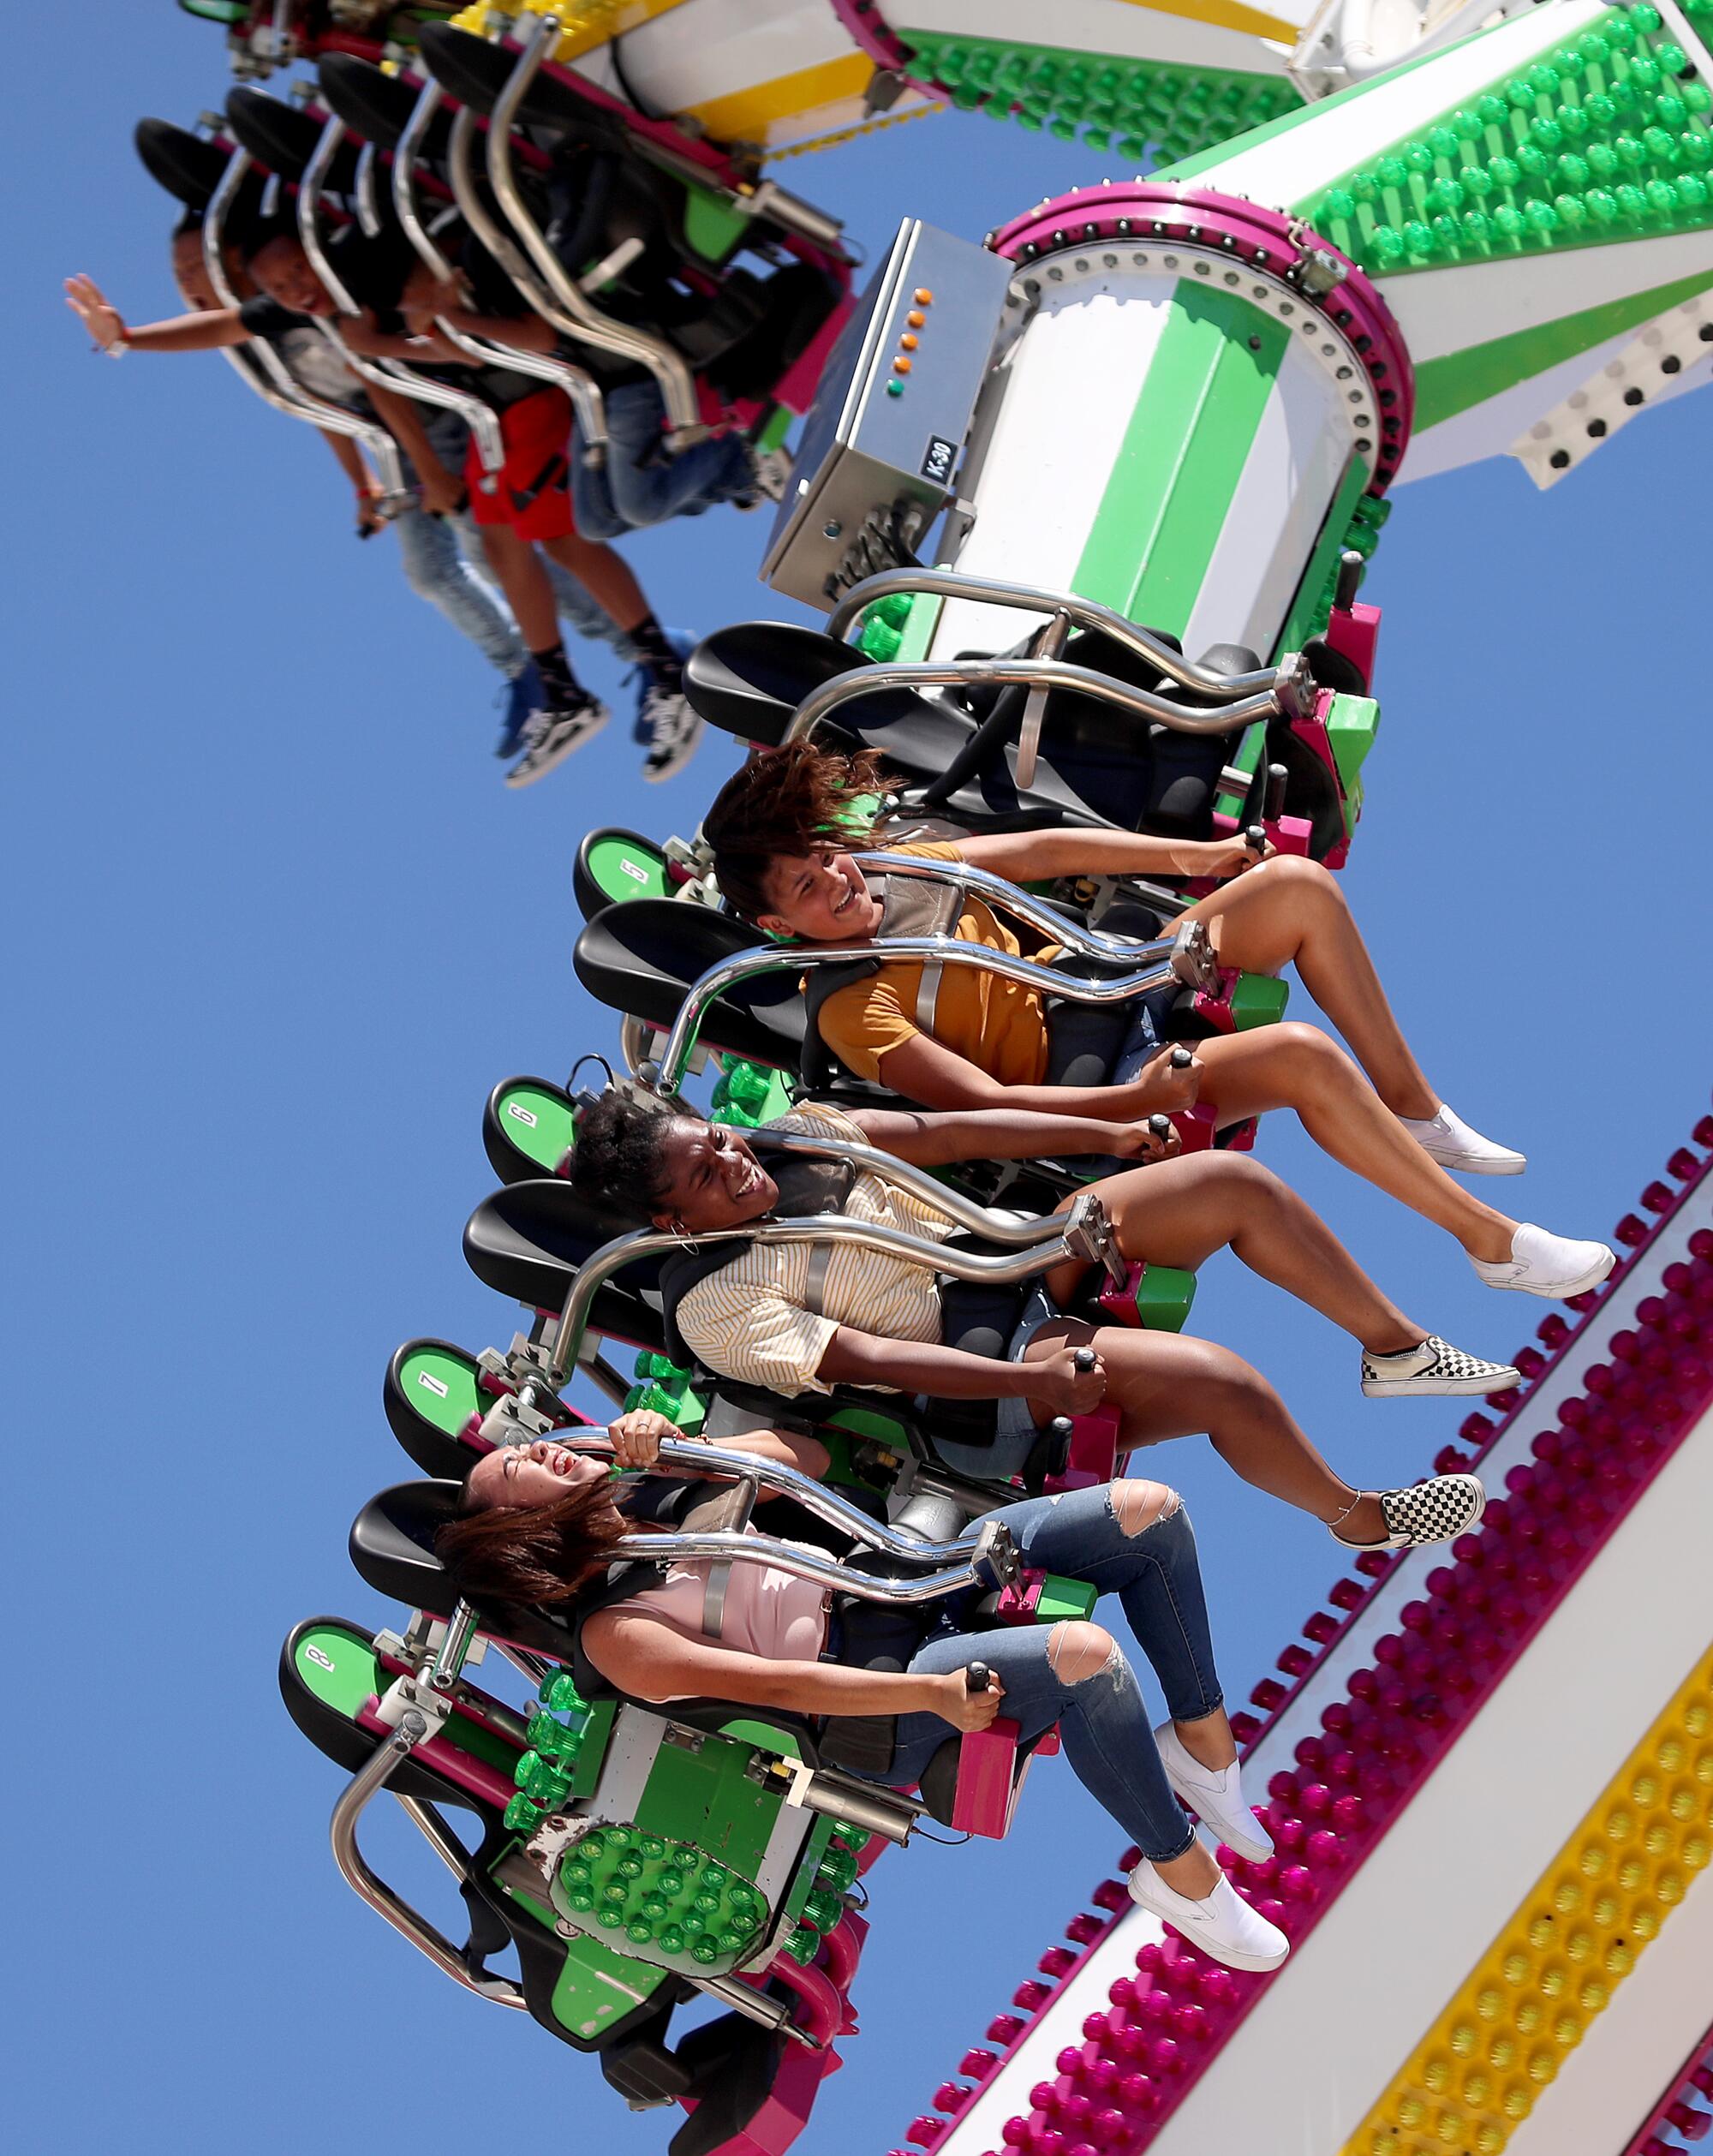 Los Angeles County Fair del Pomona Fairplex ofrece atracciones y sana diversión para grades y chicos.